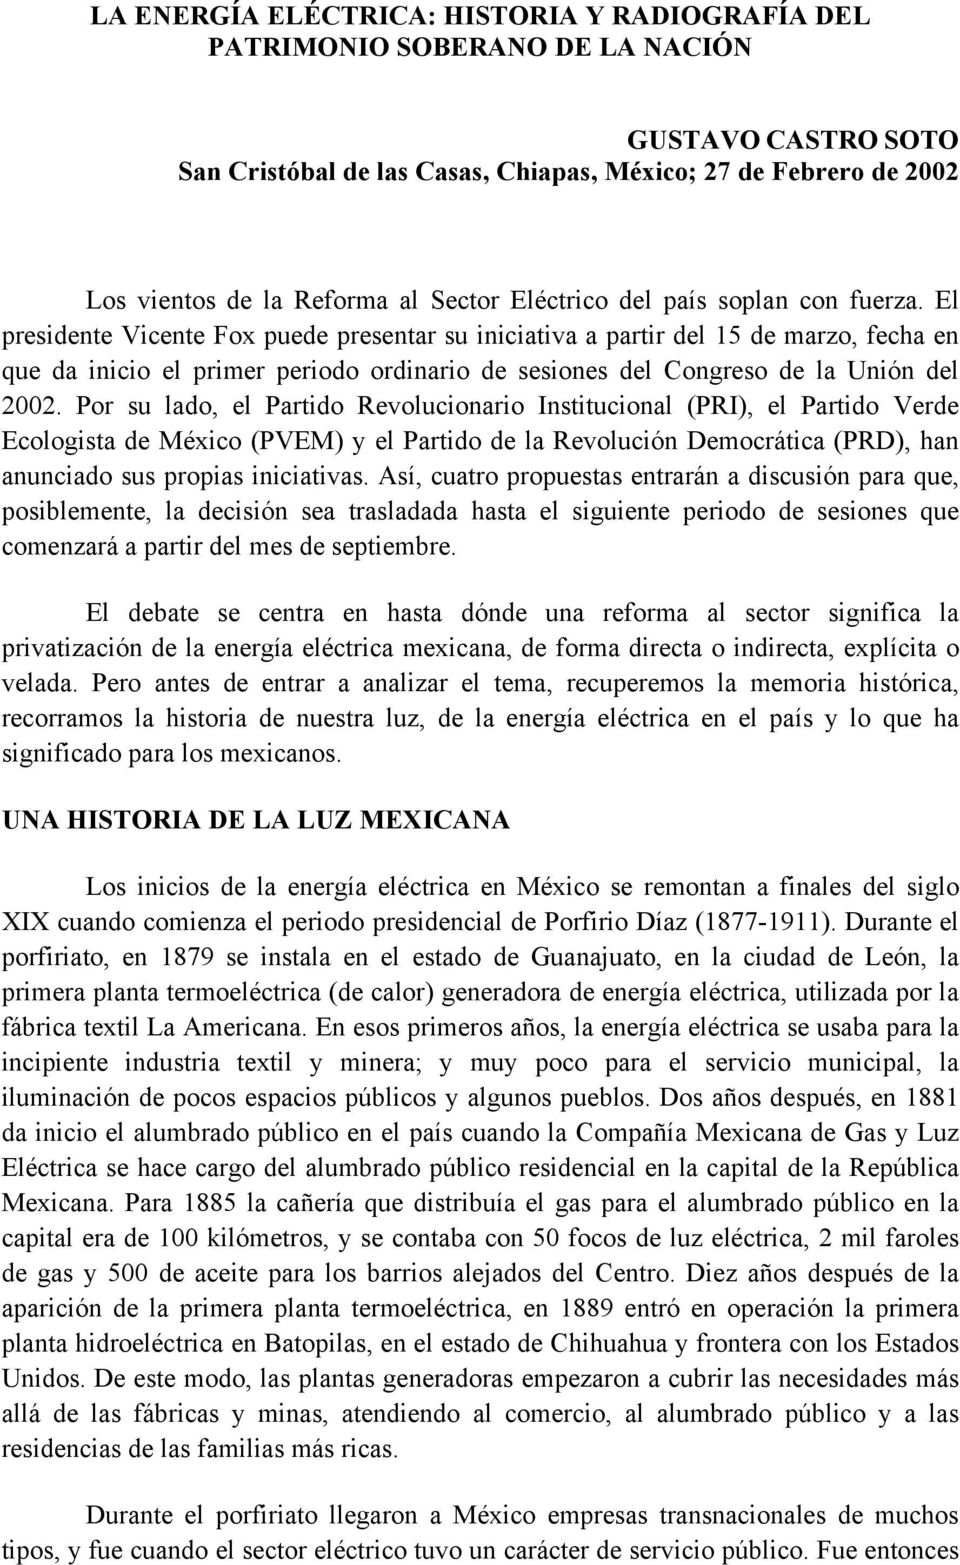 El presidente Vicente Fox puede presentar su iniciativa a partir del 15 de marzo, fecha en que da inicio el primer periodo ordinario de sesiones del Congreso de la Unión del 2002.